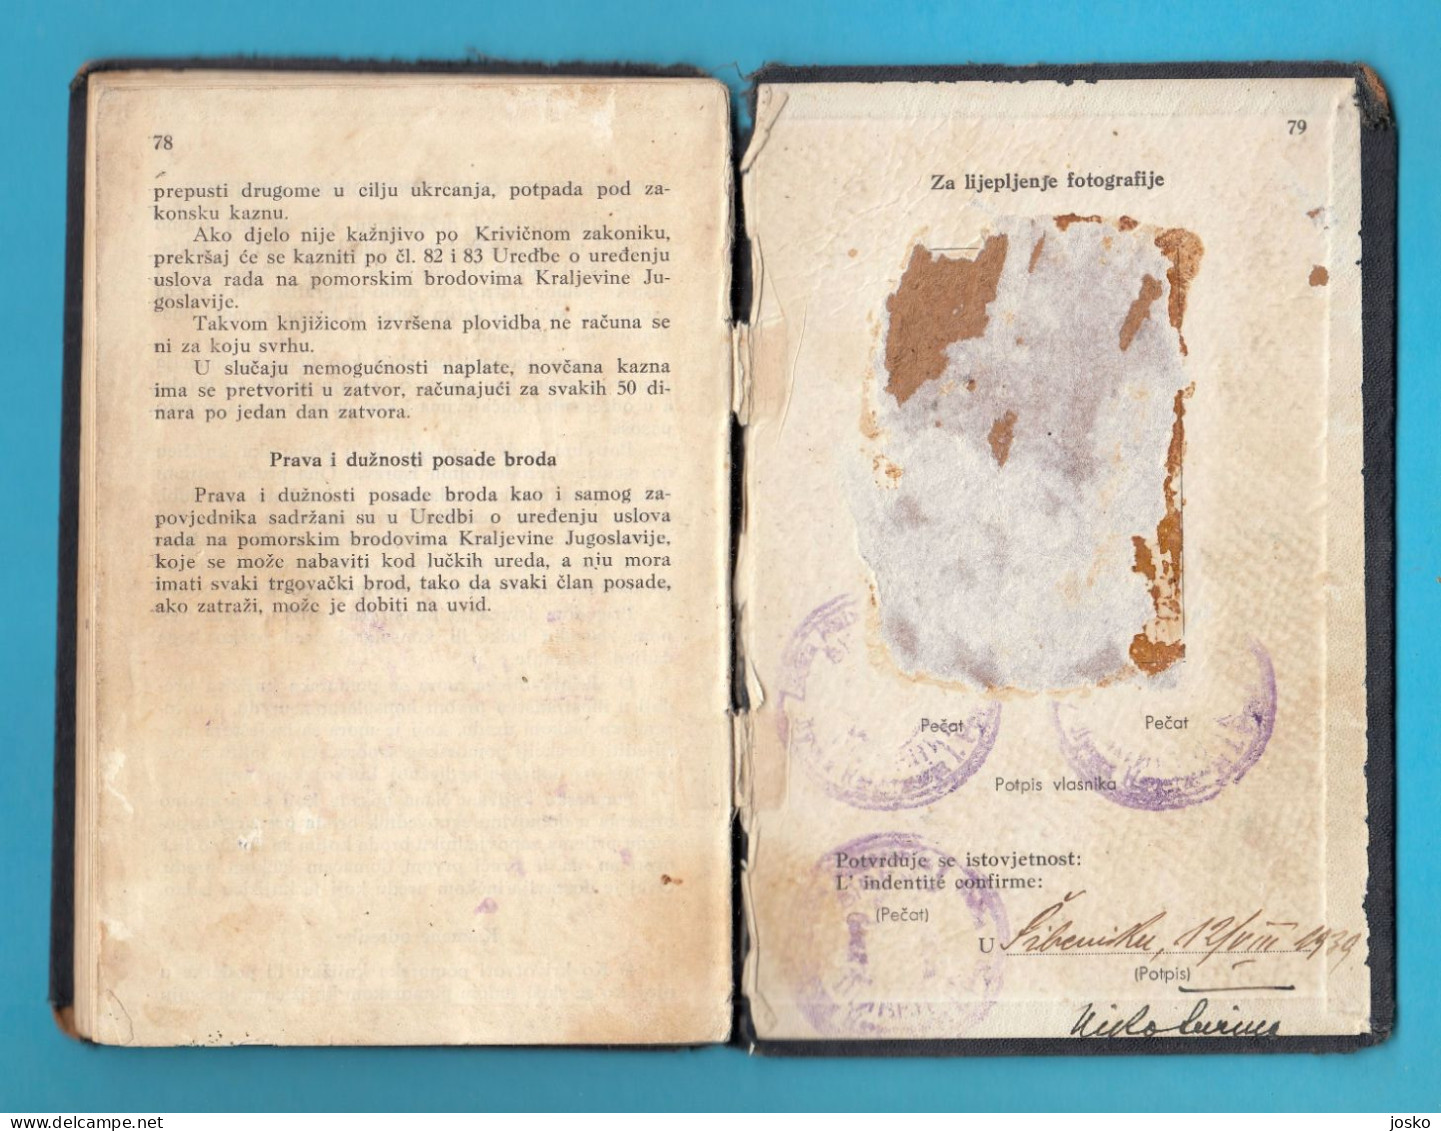 CROATIA ex YUGOSLAVIA SEAMAN'S BOOK (1939) Tijesno Island Murter * livret professionnel maritime libretto di navigazione